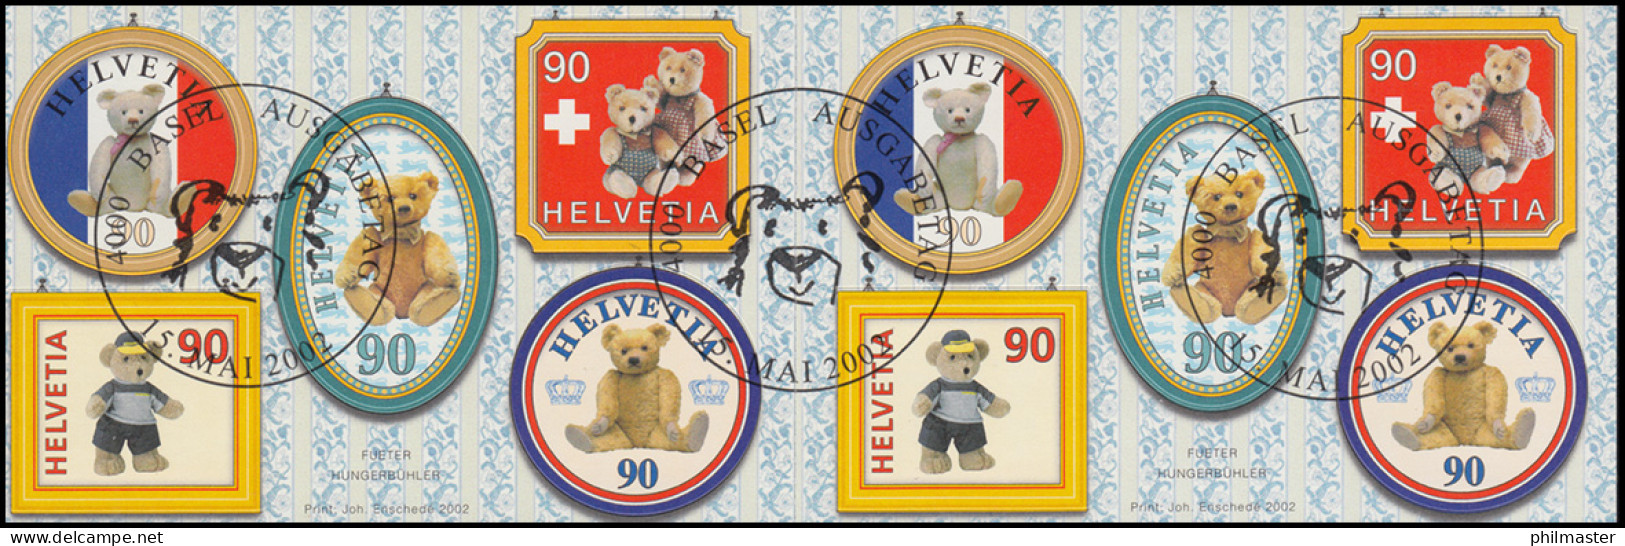 Schweiz Markenheftchen 0-126, Teddybär, Selbstklebend, 2002, ESSt BASEL - Markenheftchen